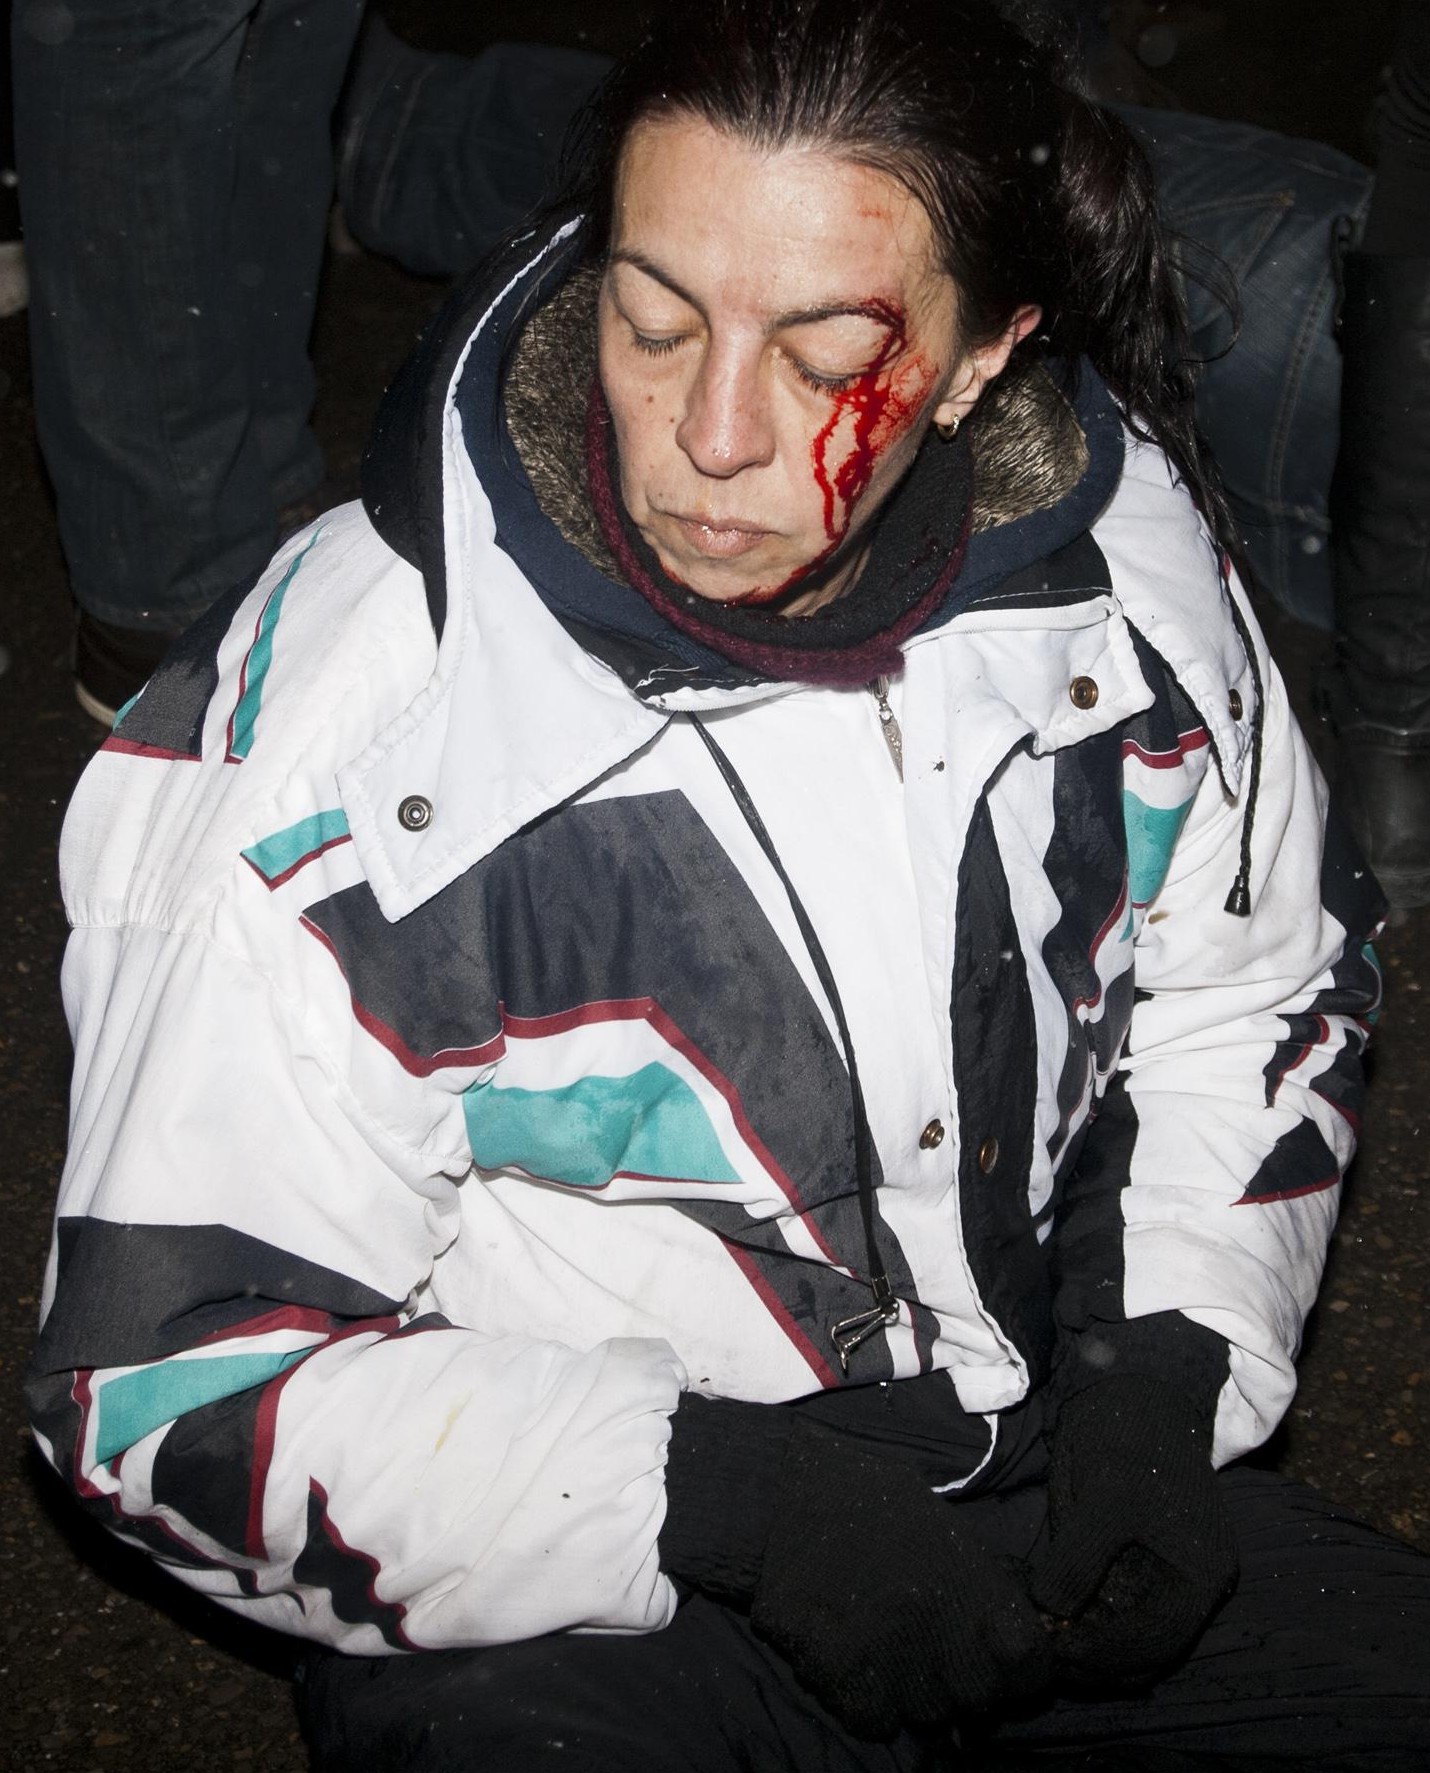 14 души минали през “Пирогов” след снощните безредици в София